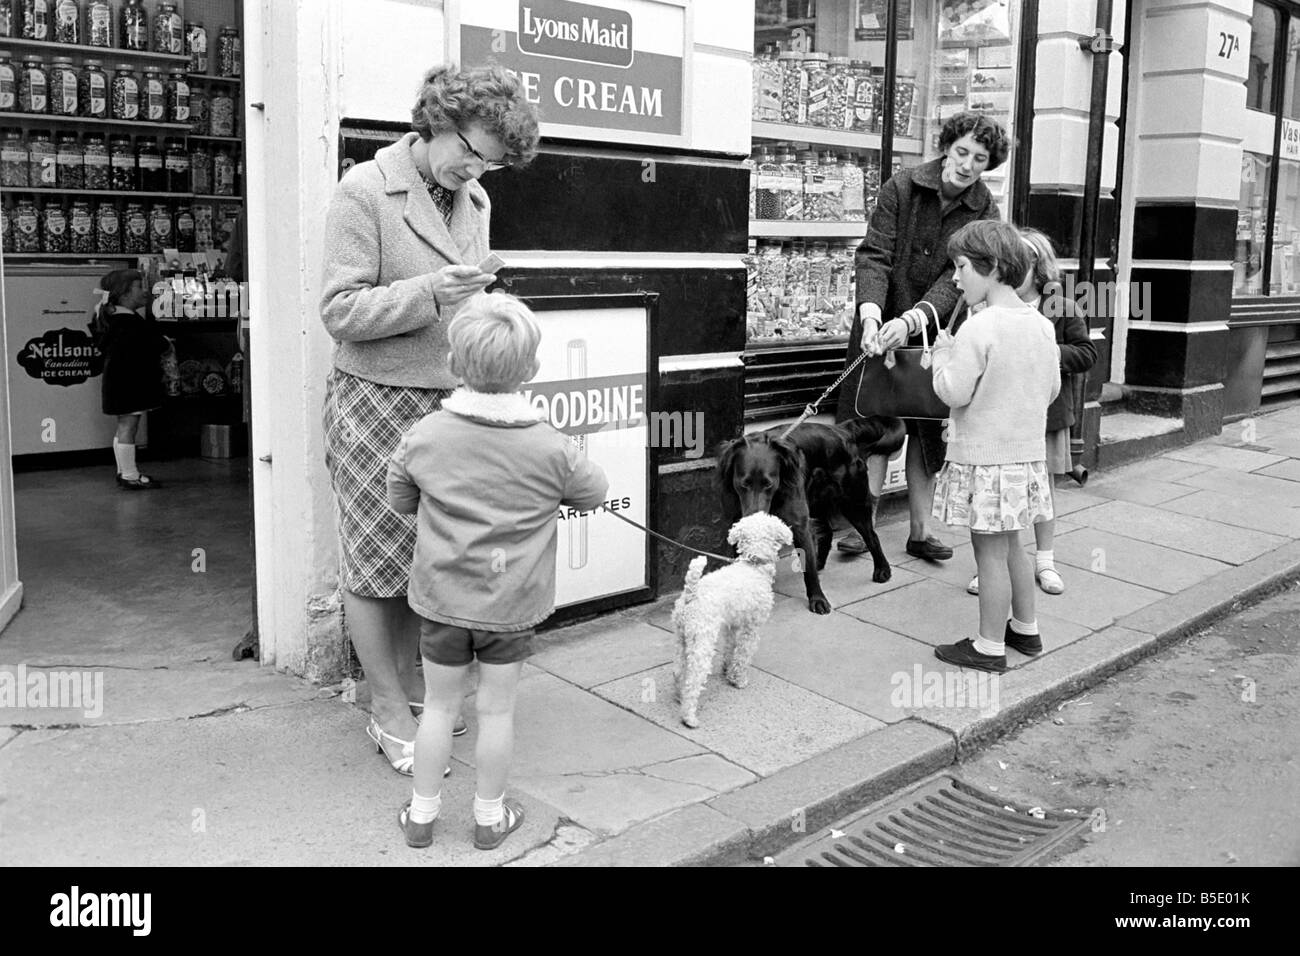 Le scene del cane in Brighton. Scene di persone con i loro cani in Brighton. La nostra immagine mostra; i bambini al di fuori del locale negozio di dolci con i loro cani. Ottobre 1963 Foto Stock